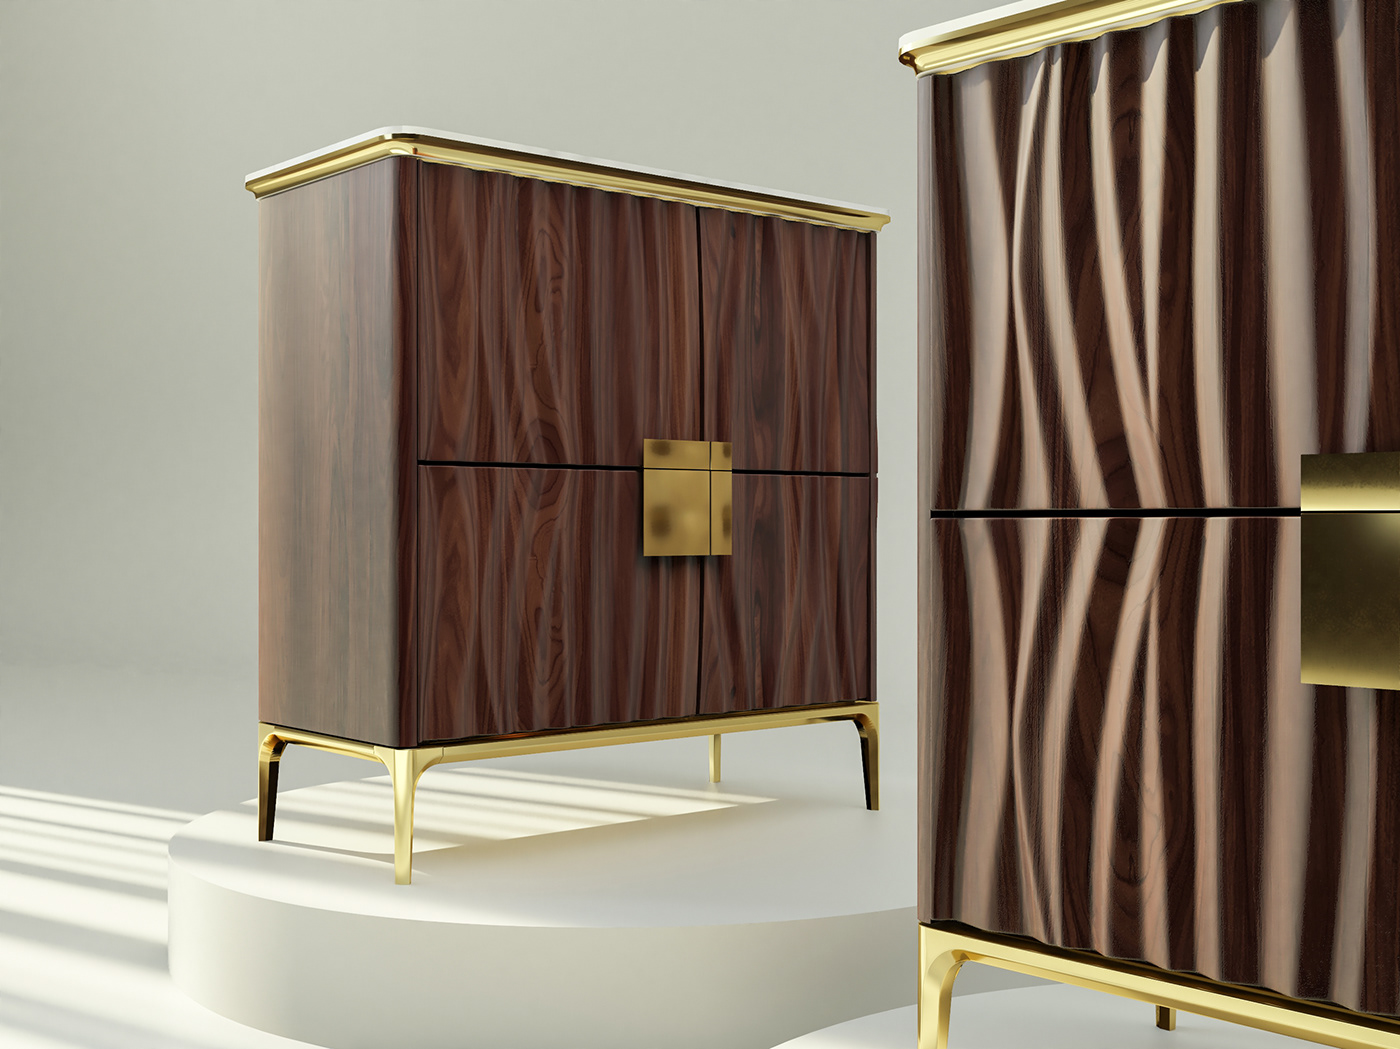 3ds max chest of drawers furniture modern modeling 3D Render design bedroom interior design 